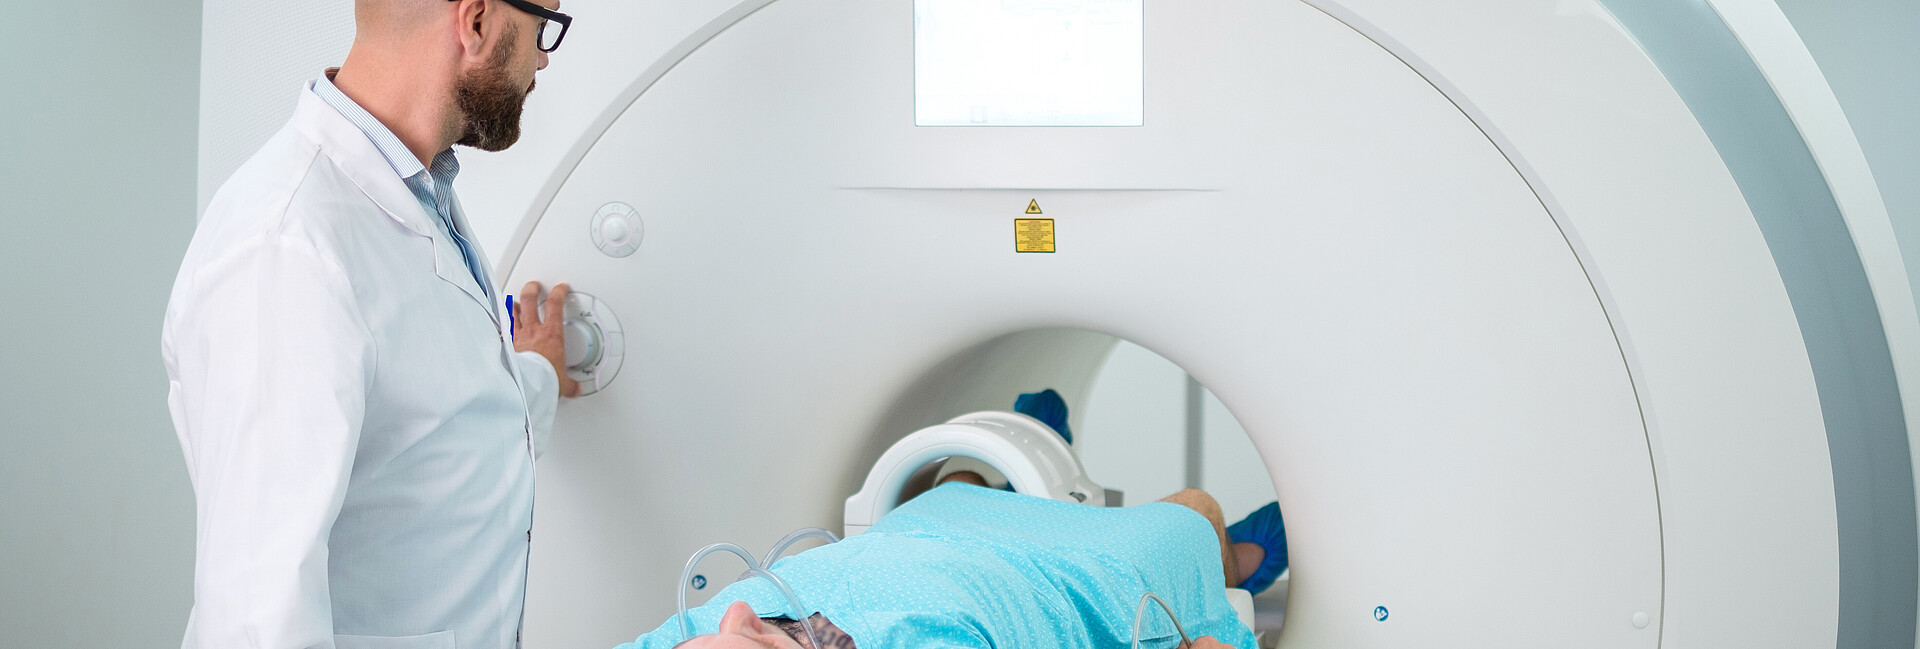 Radiologe bei einer CT mit Patientin